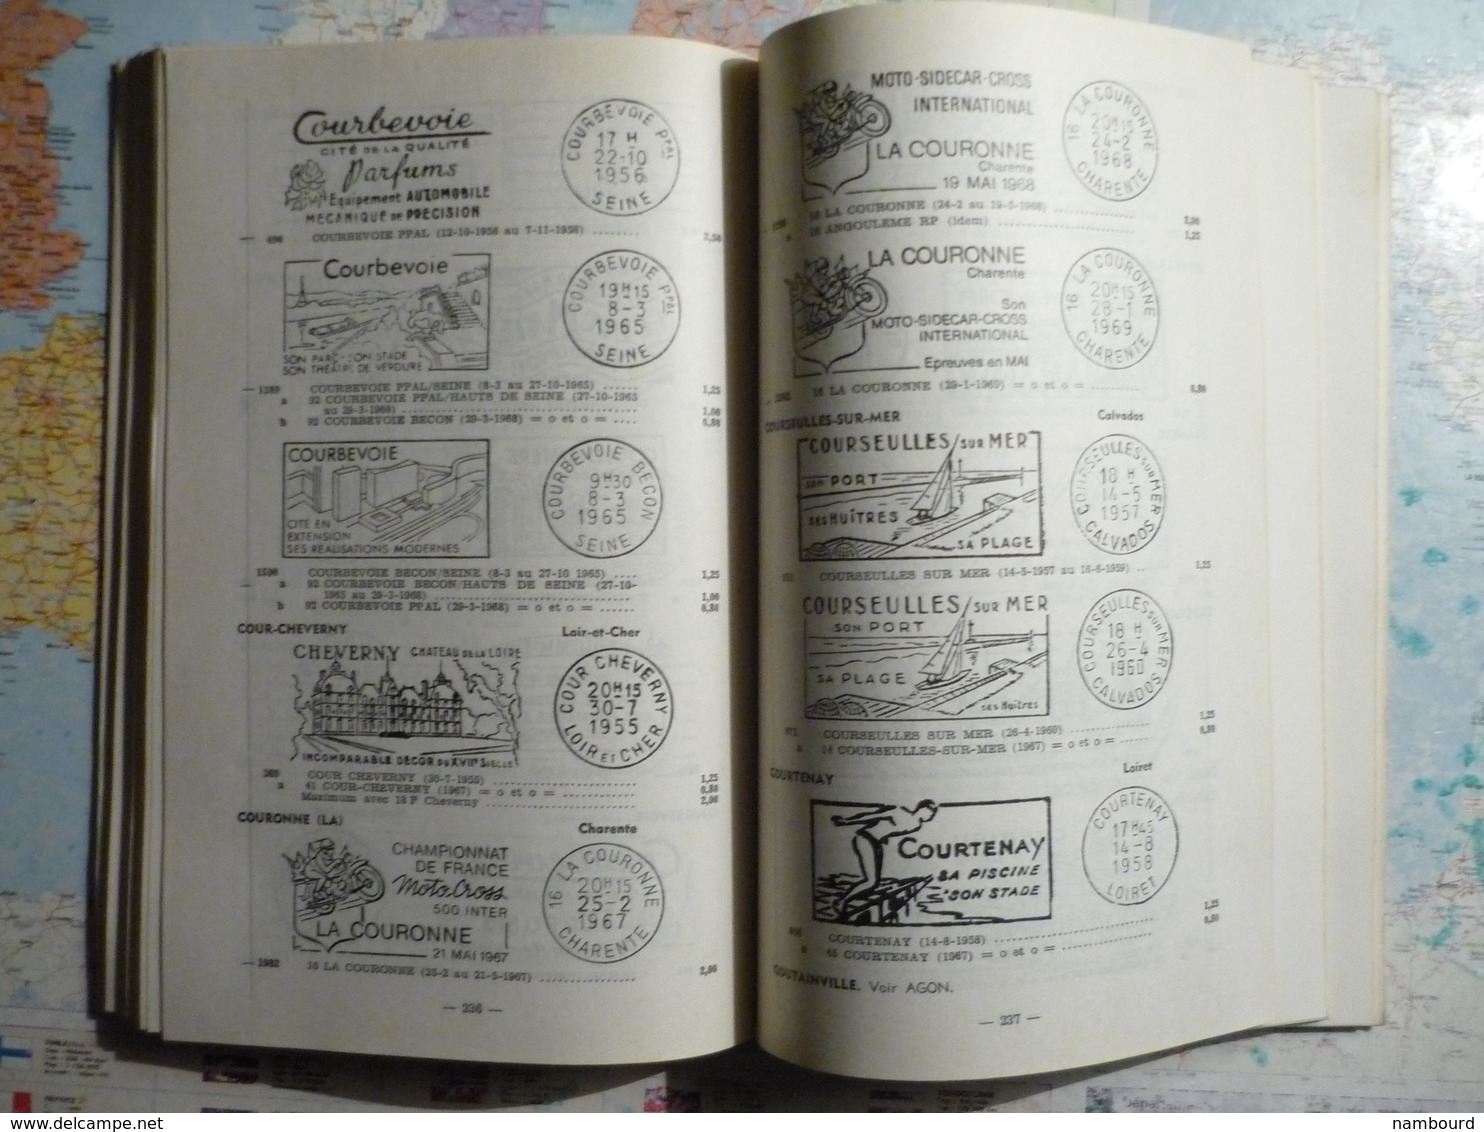 Catalogue des oblitérations mécaniques  à flamme illustrée ou stylisée 3-e édition 1971 Tomes I et II